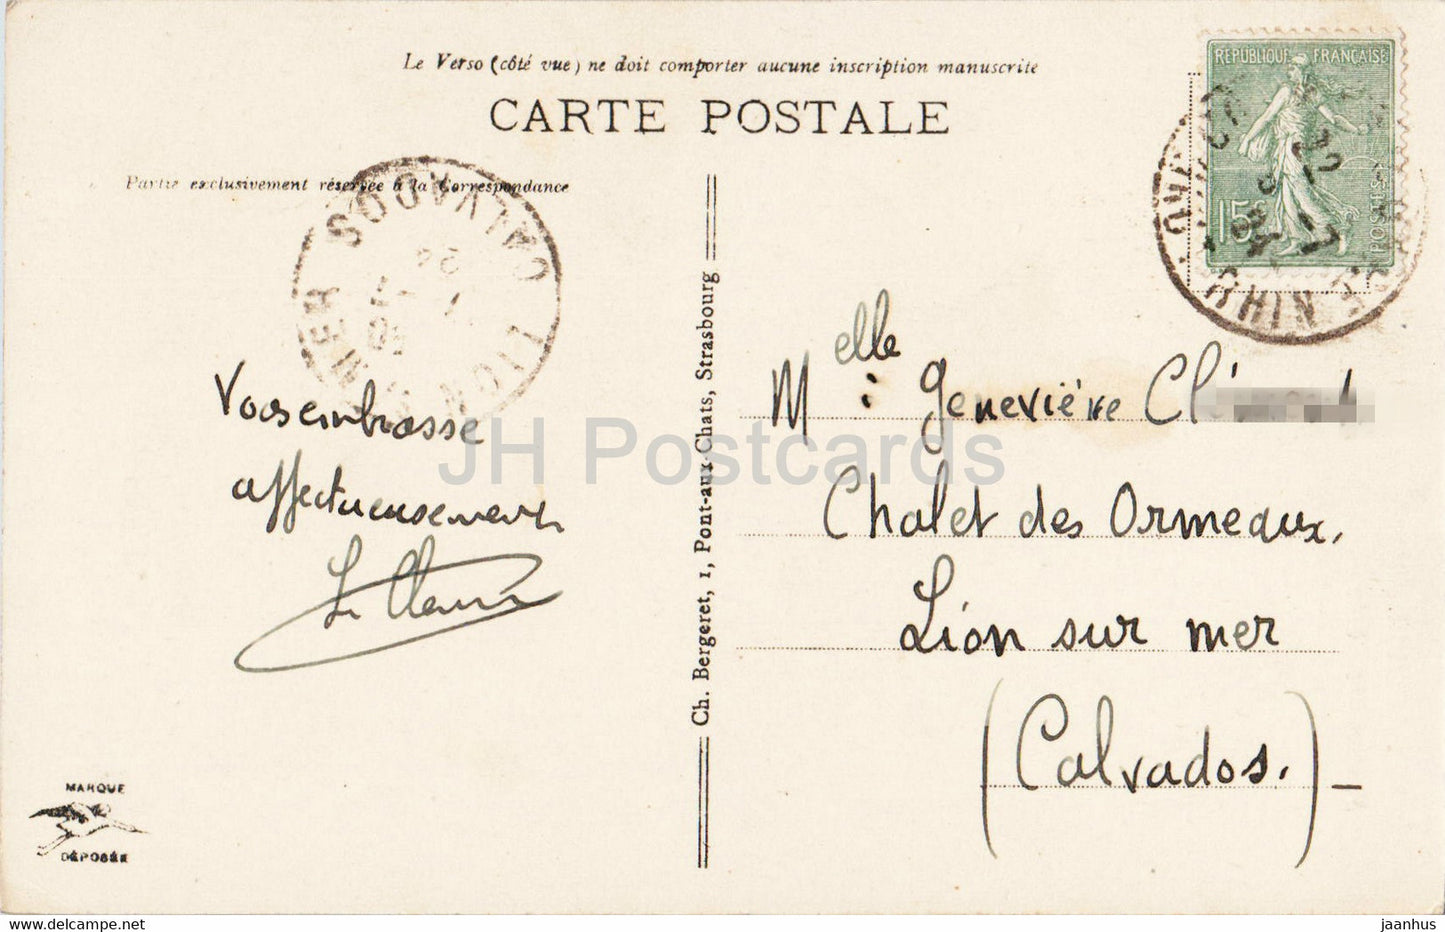 Colmar - Maison des Têtes - 11 - carte postale ancienne - 1924 - France - occasion